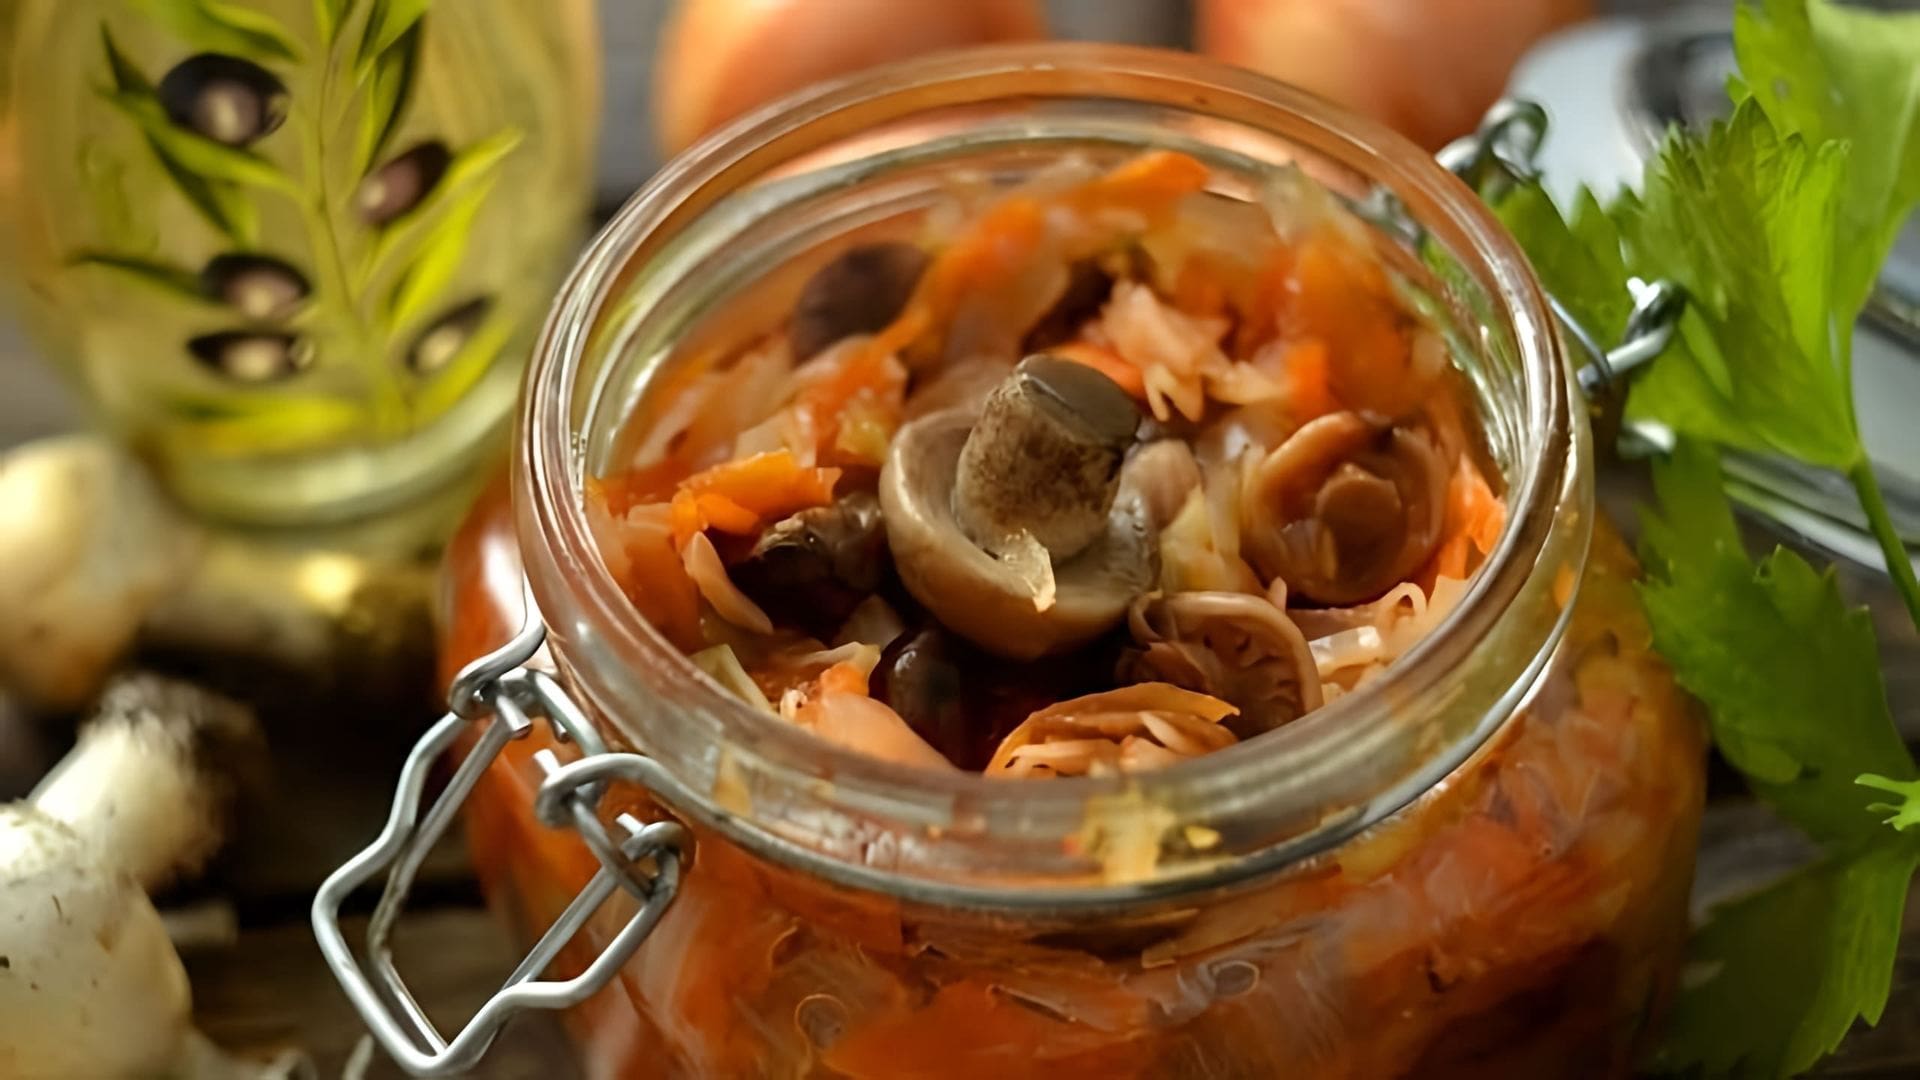 Видео как приготовить солянку, русский маринованный овощной суп, для зимнего хранения с использованием грибов, капусты, моркови и лука